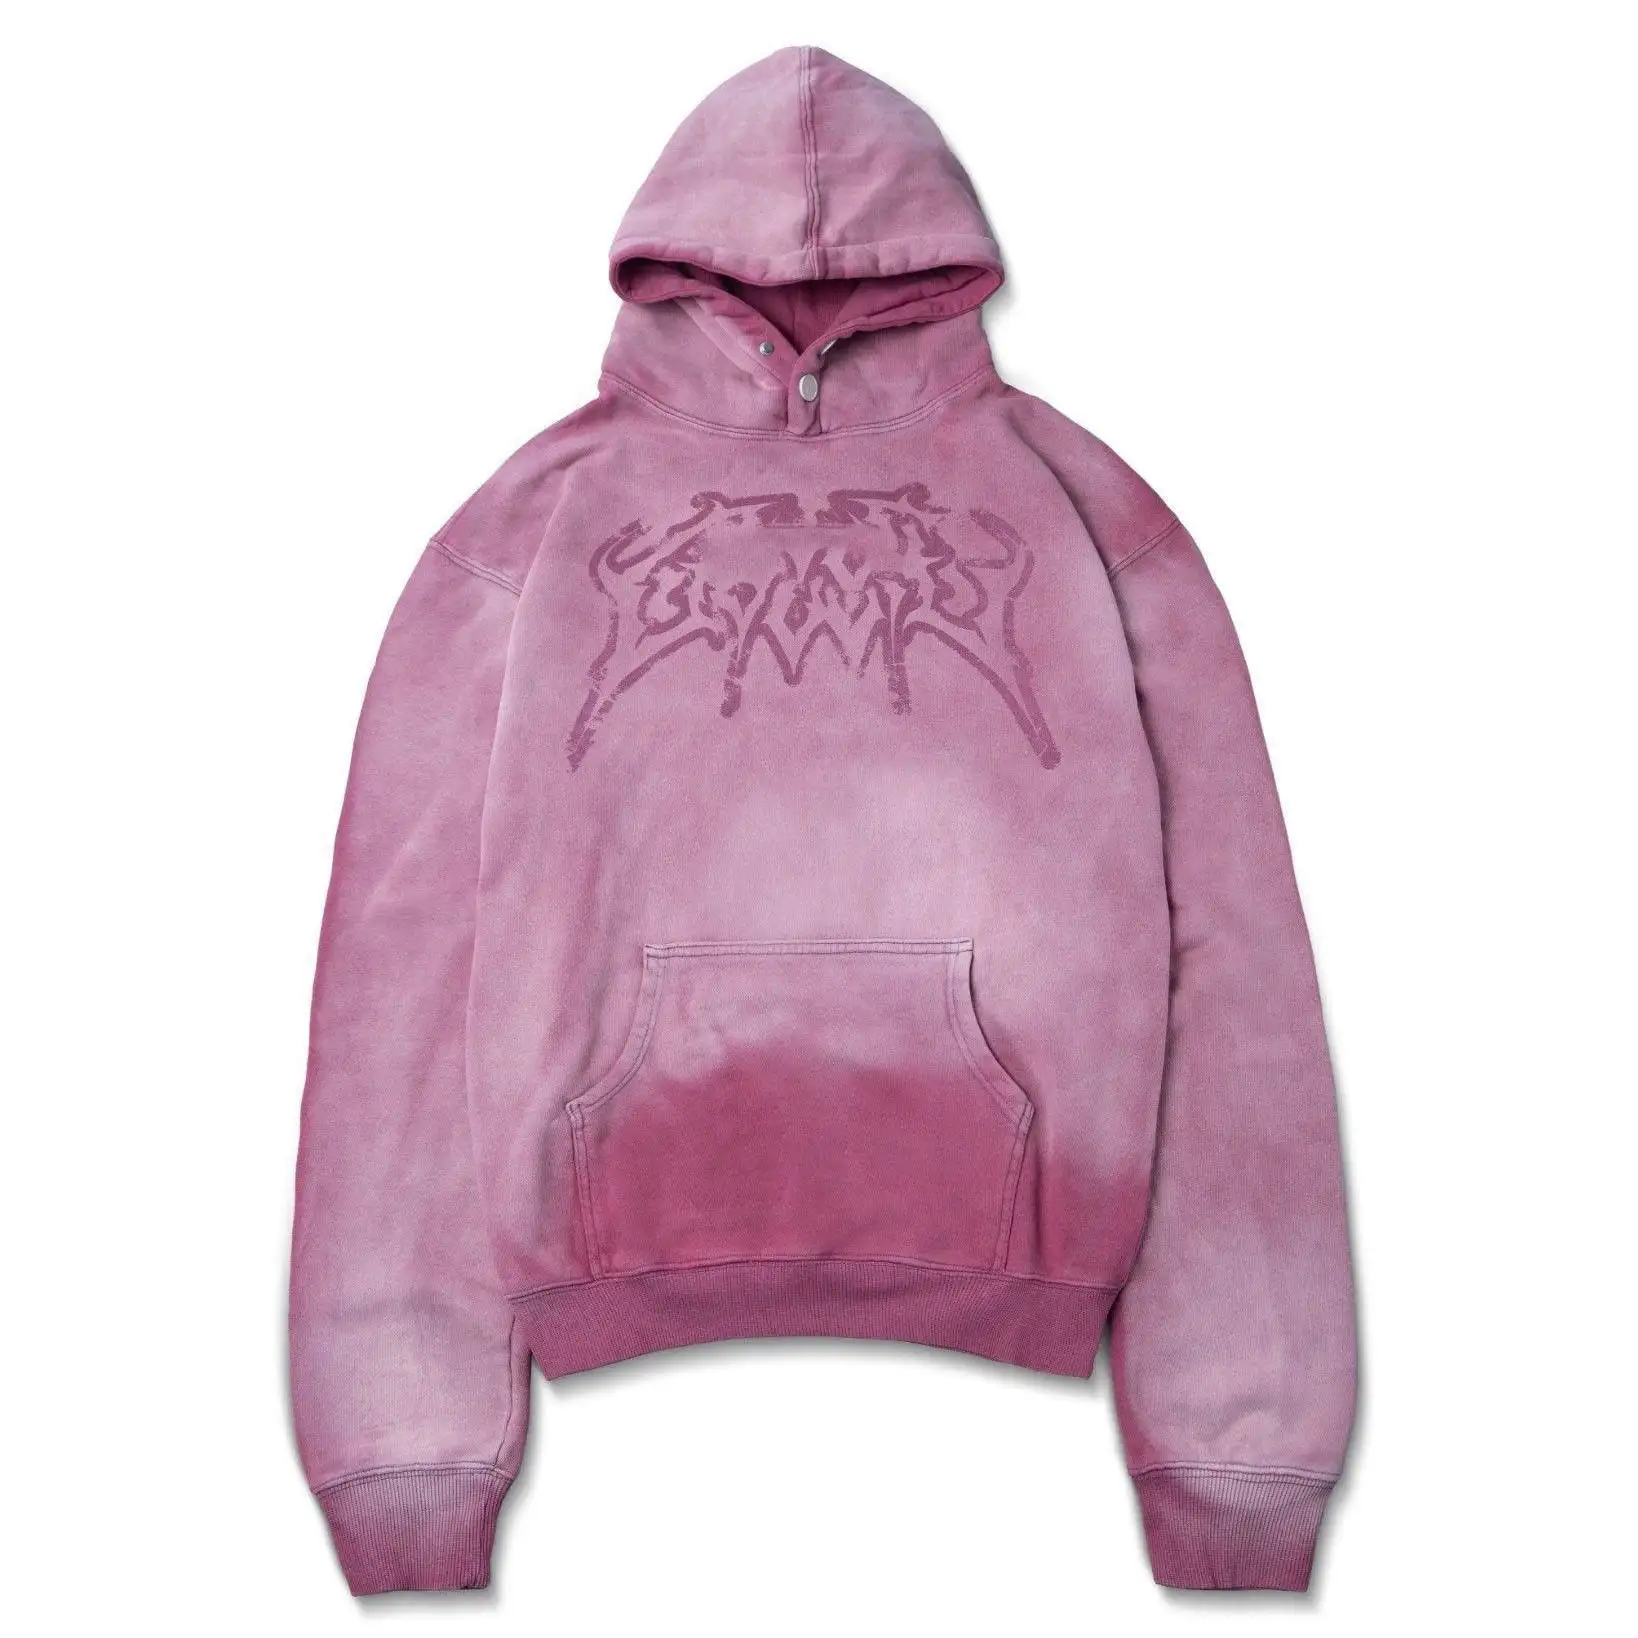 Hochwertige 100 % Baumwolle Hoodie Streetwear französisch Terry Sonne verblasst zerrissen handgezeichnet Vintage rosa Acid-Wash Vintage Hoodies